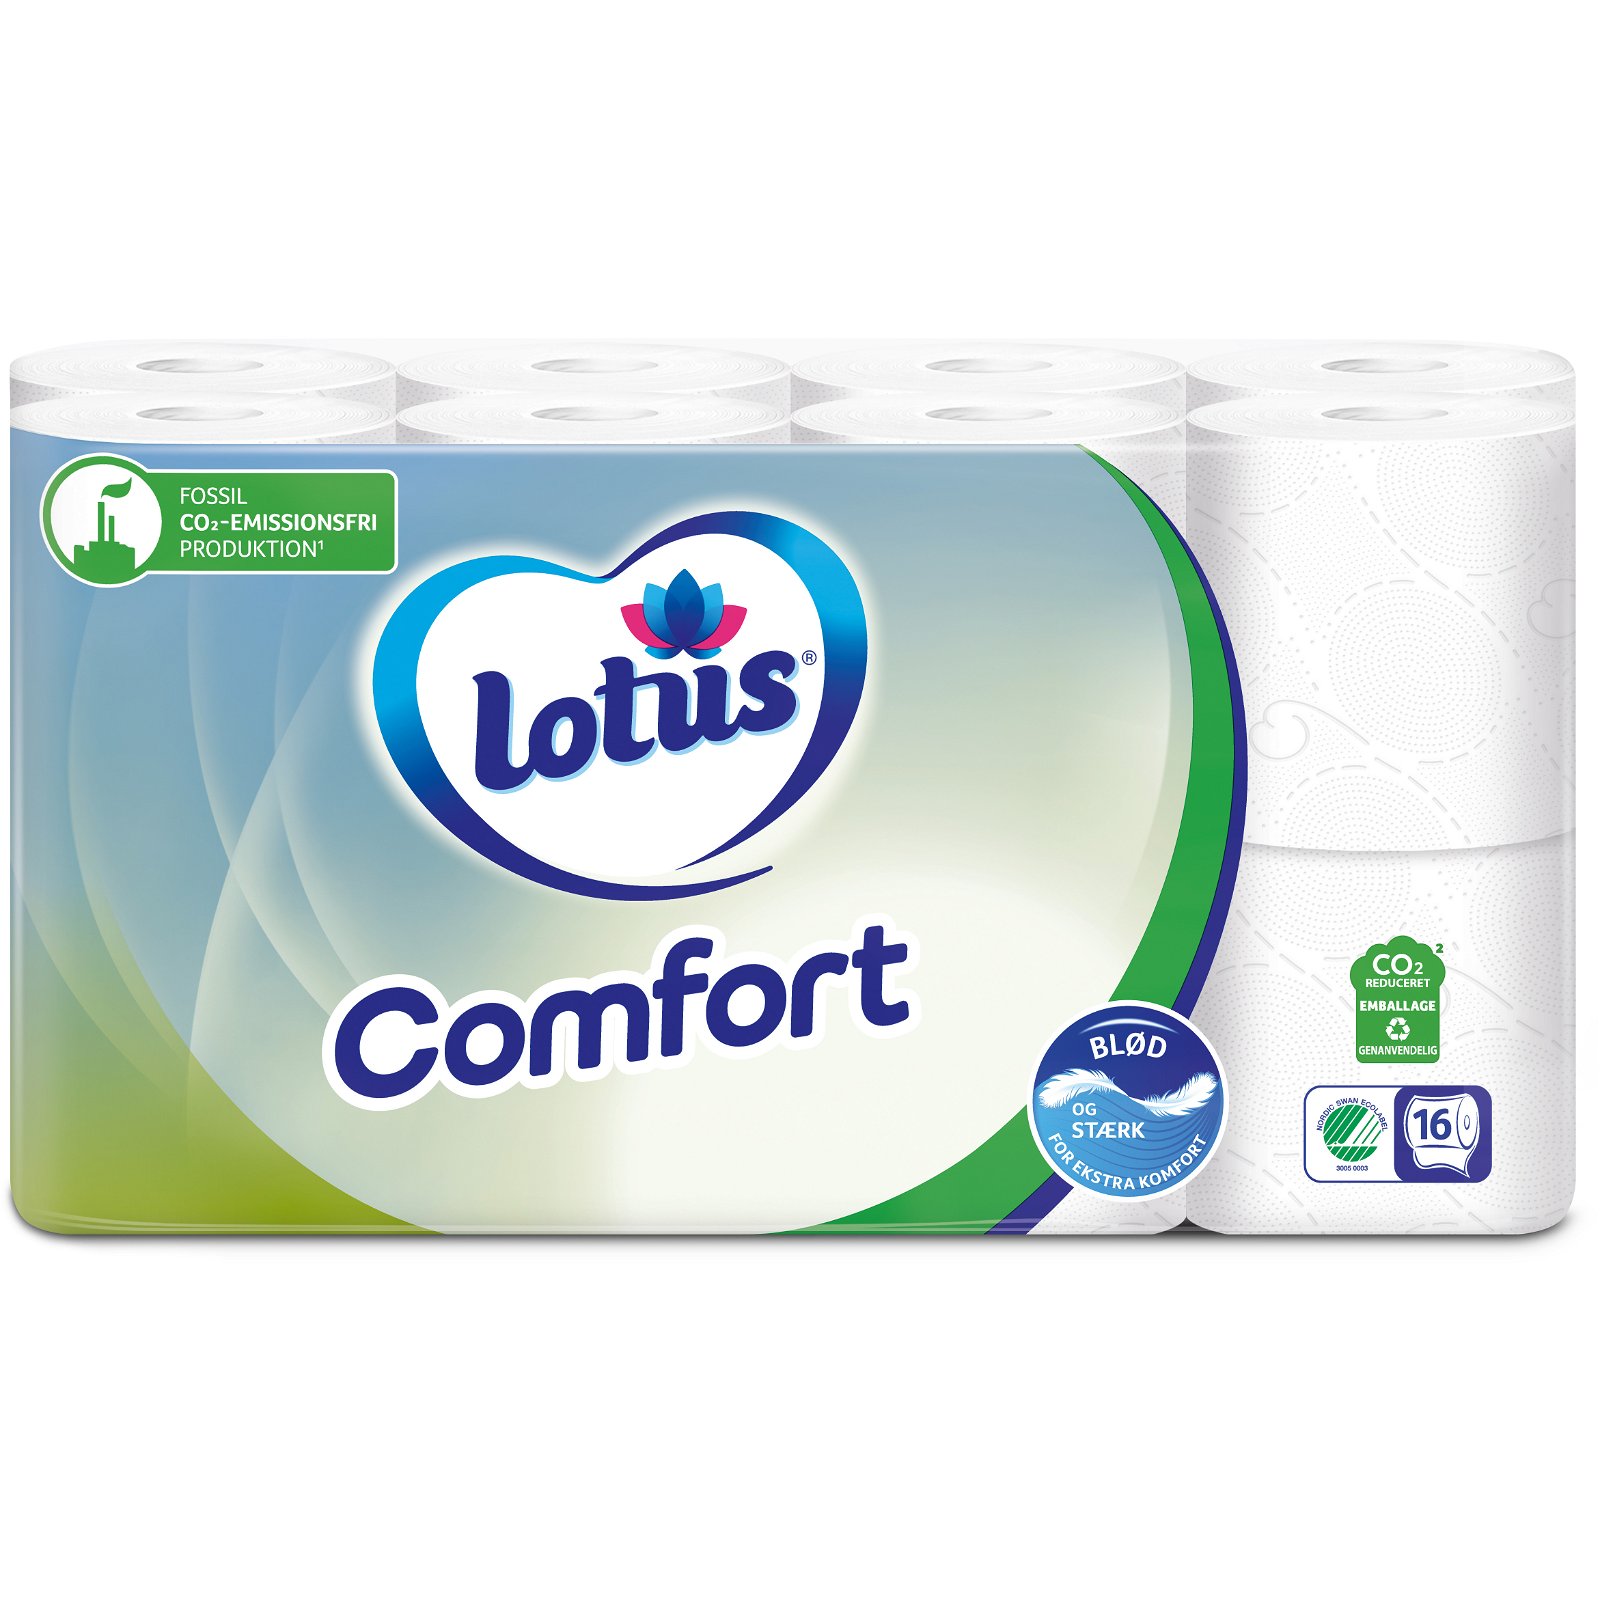 Lotus Comfort toiletpapir 16 ruller